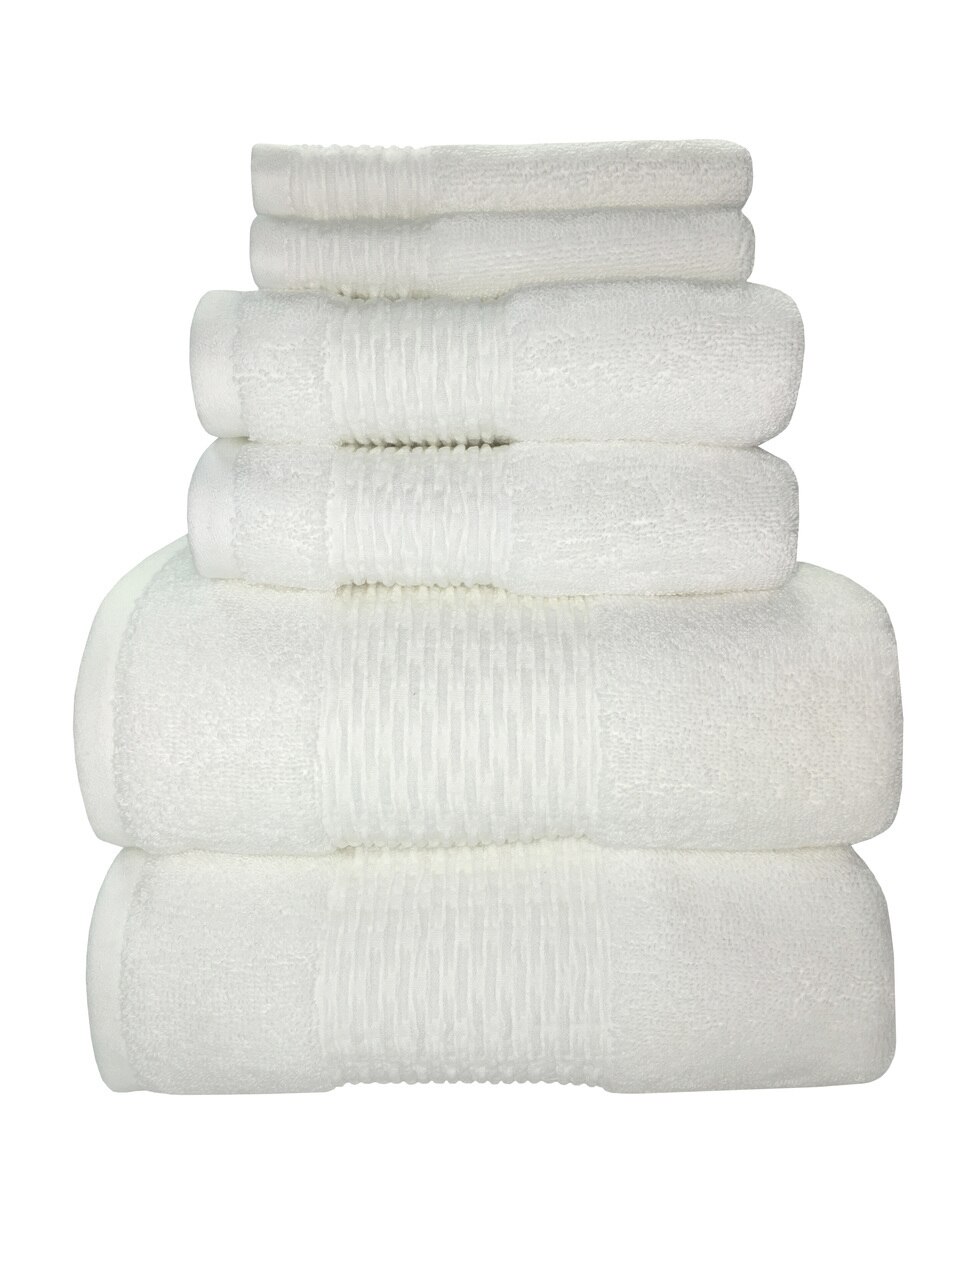 Sttelli Luna Collection - Hand Towel - White